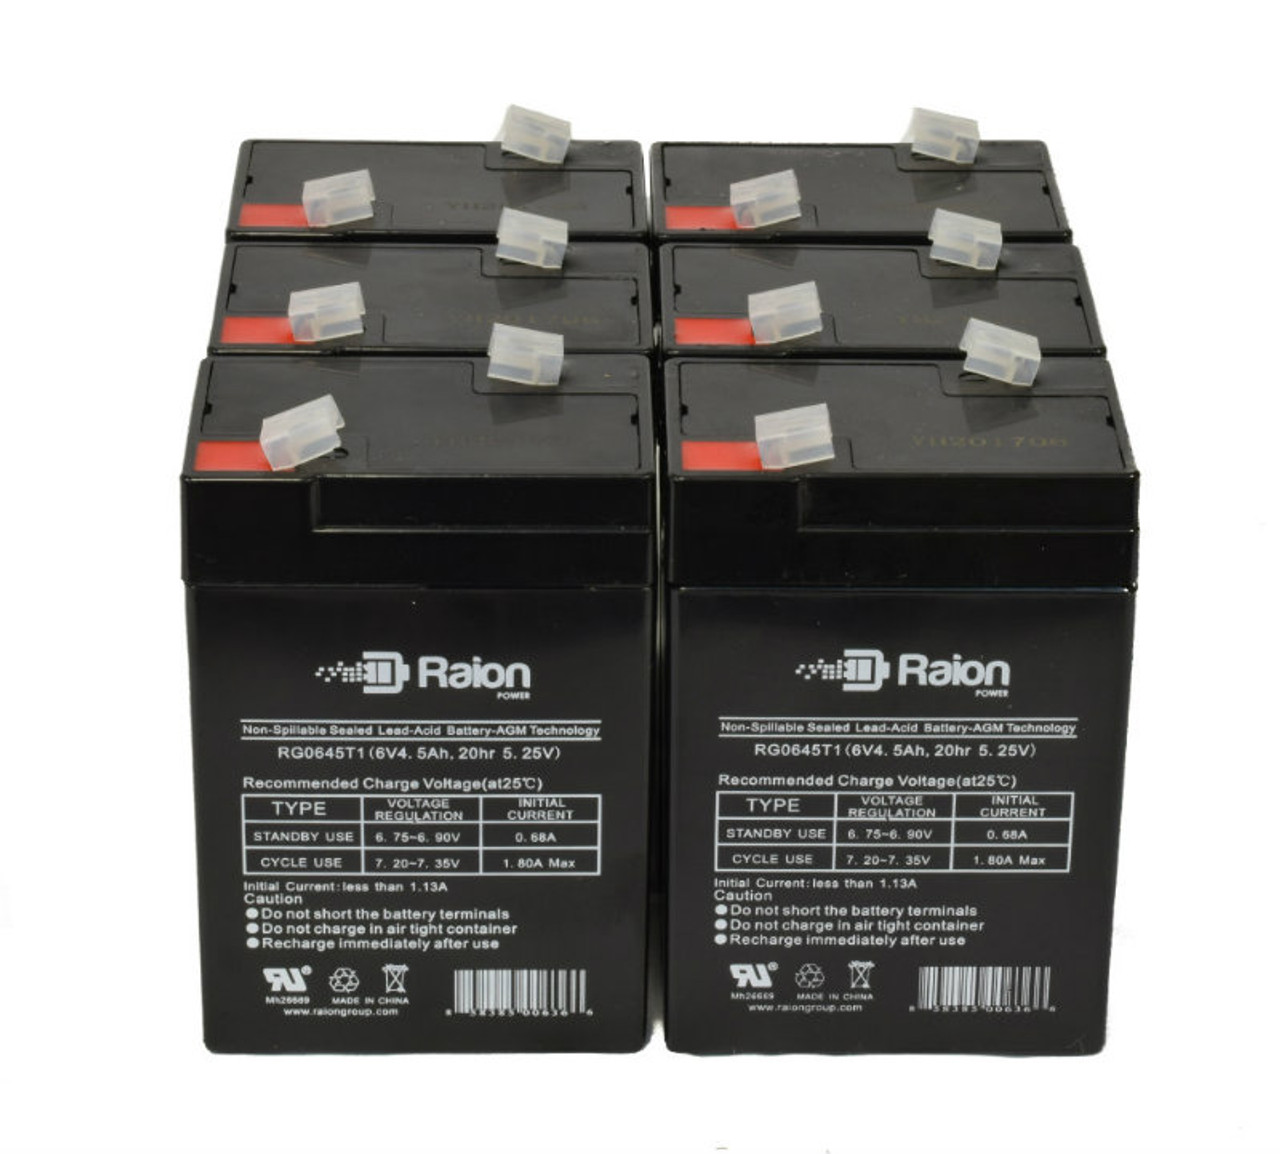 Raion Power 6 Volt 4.5Ah RG0645T1 Replacement Battery for Epcom Power Line PL-4.5-6 - 6 Pack